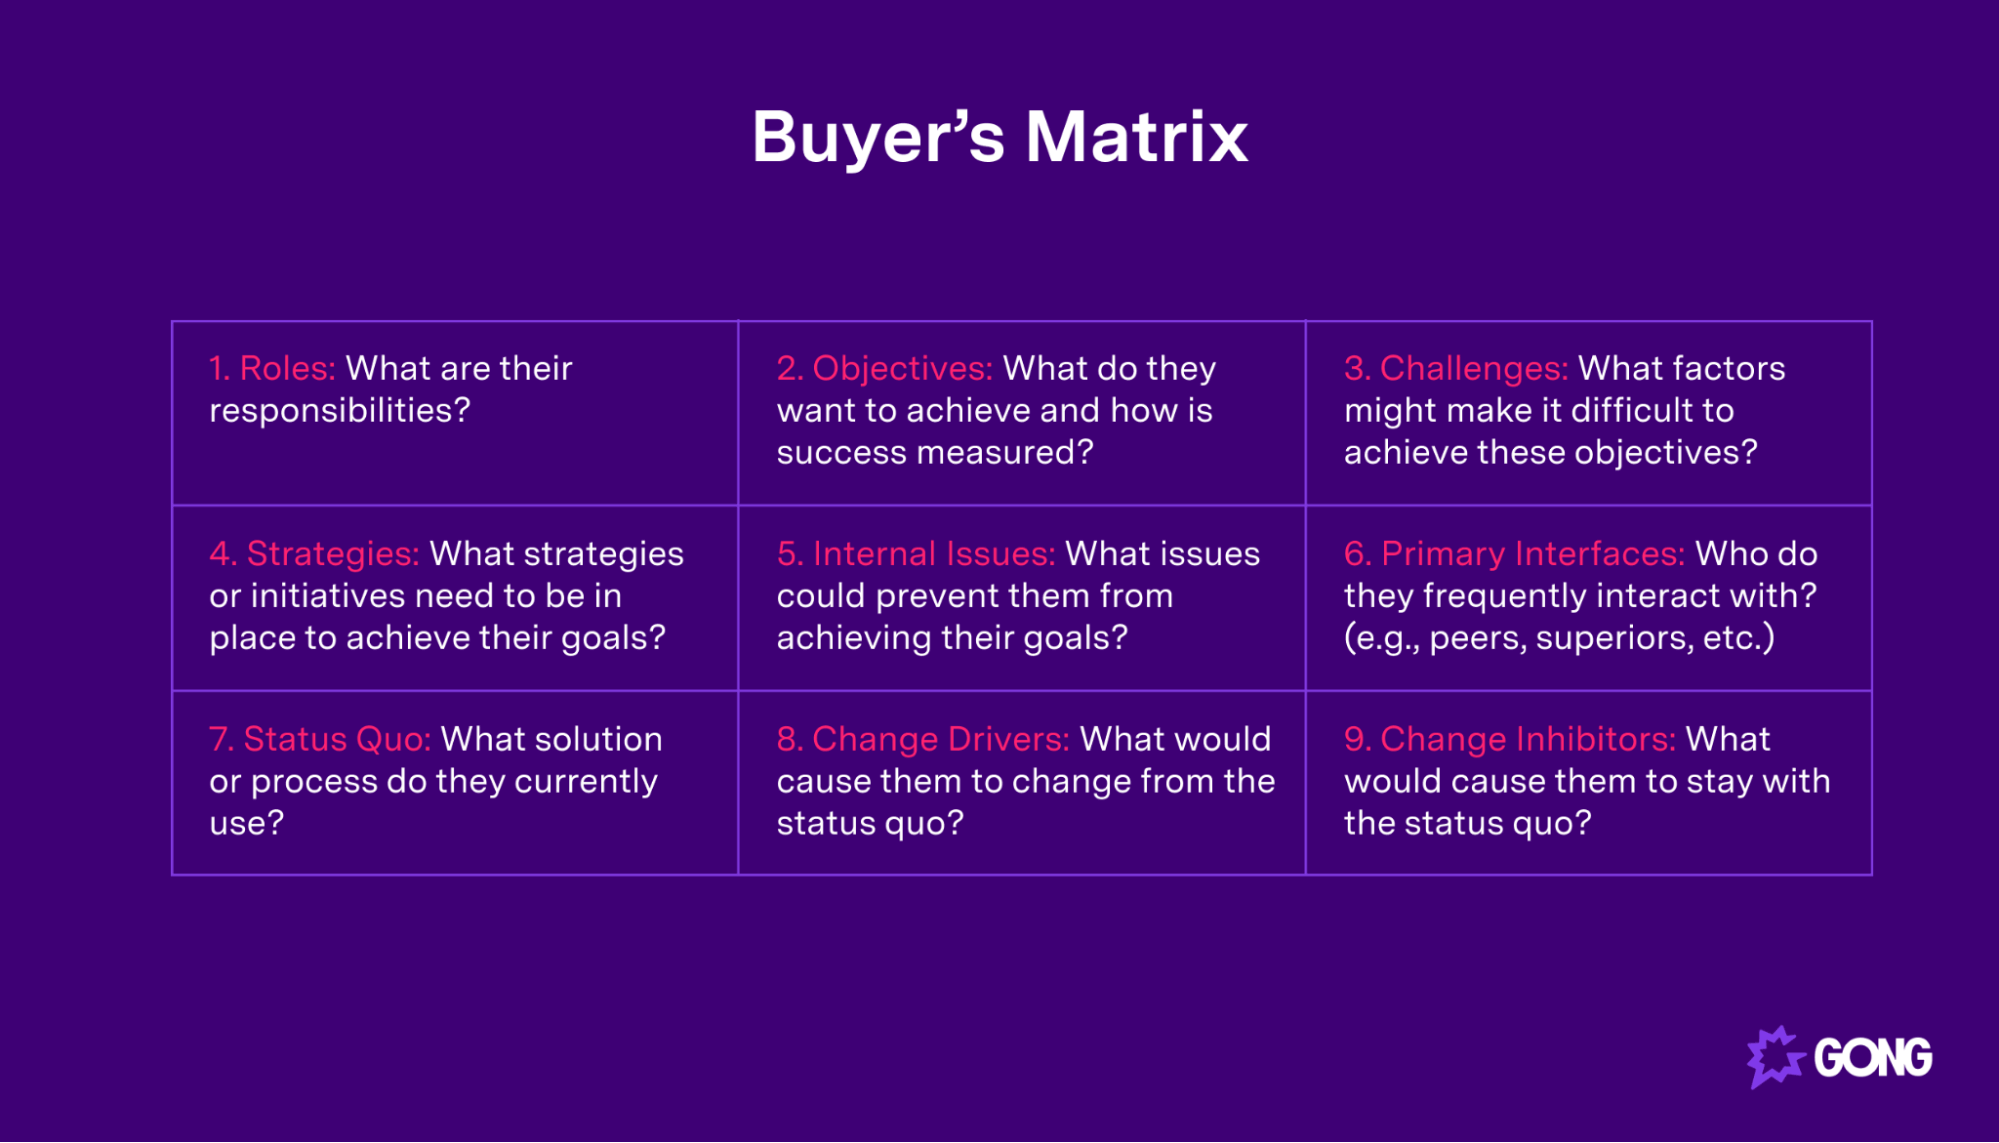 Example of Buyer's Matrix